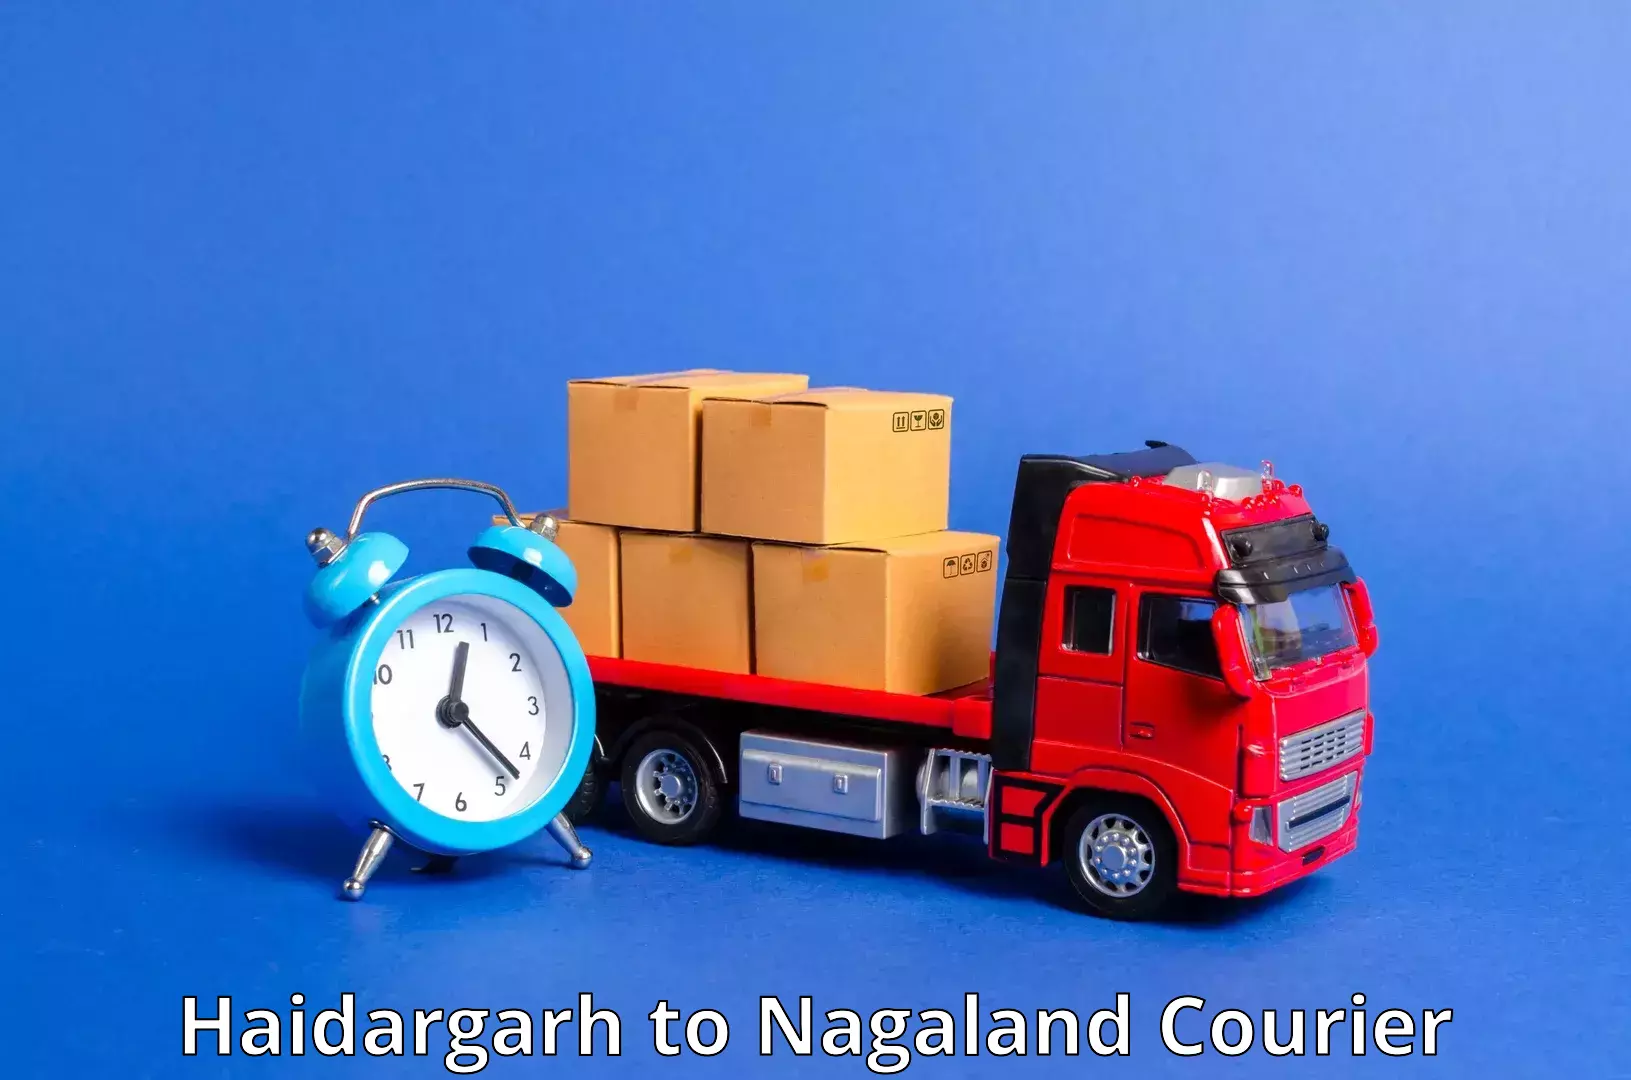 Advanced tracking systems Haidargarh to NIT Nagaland